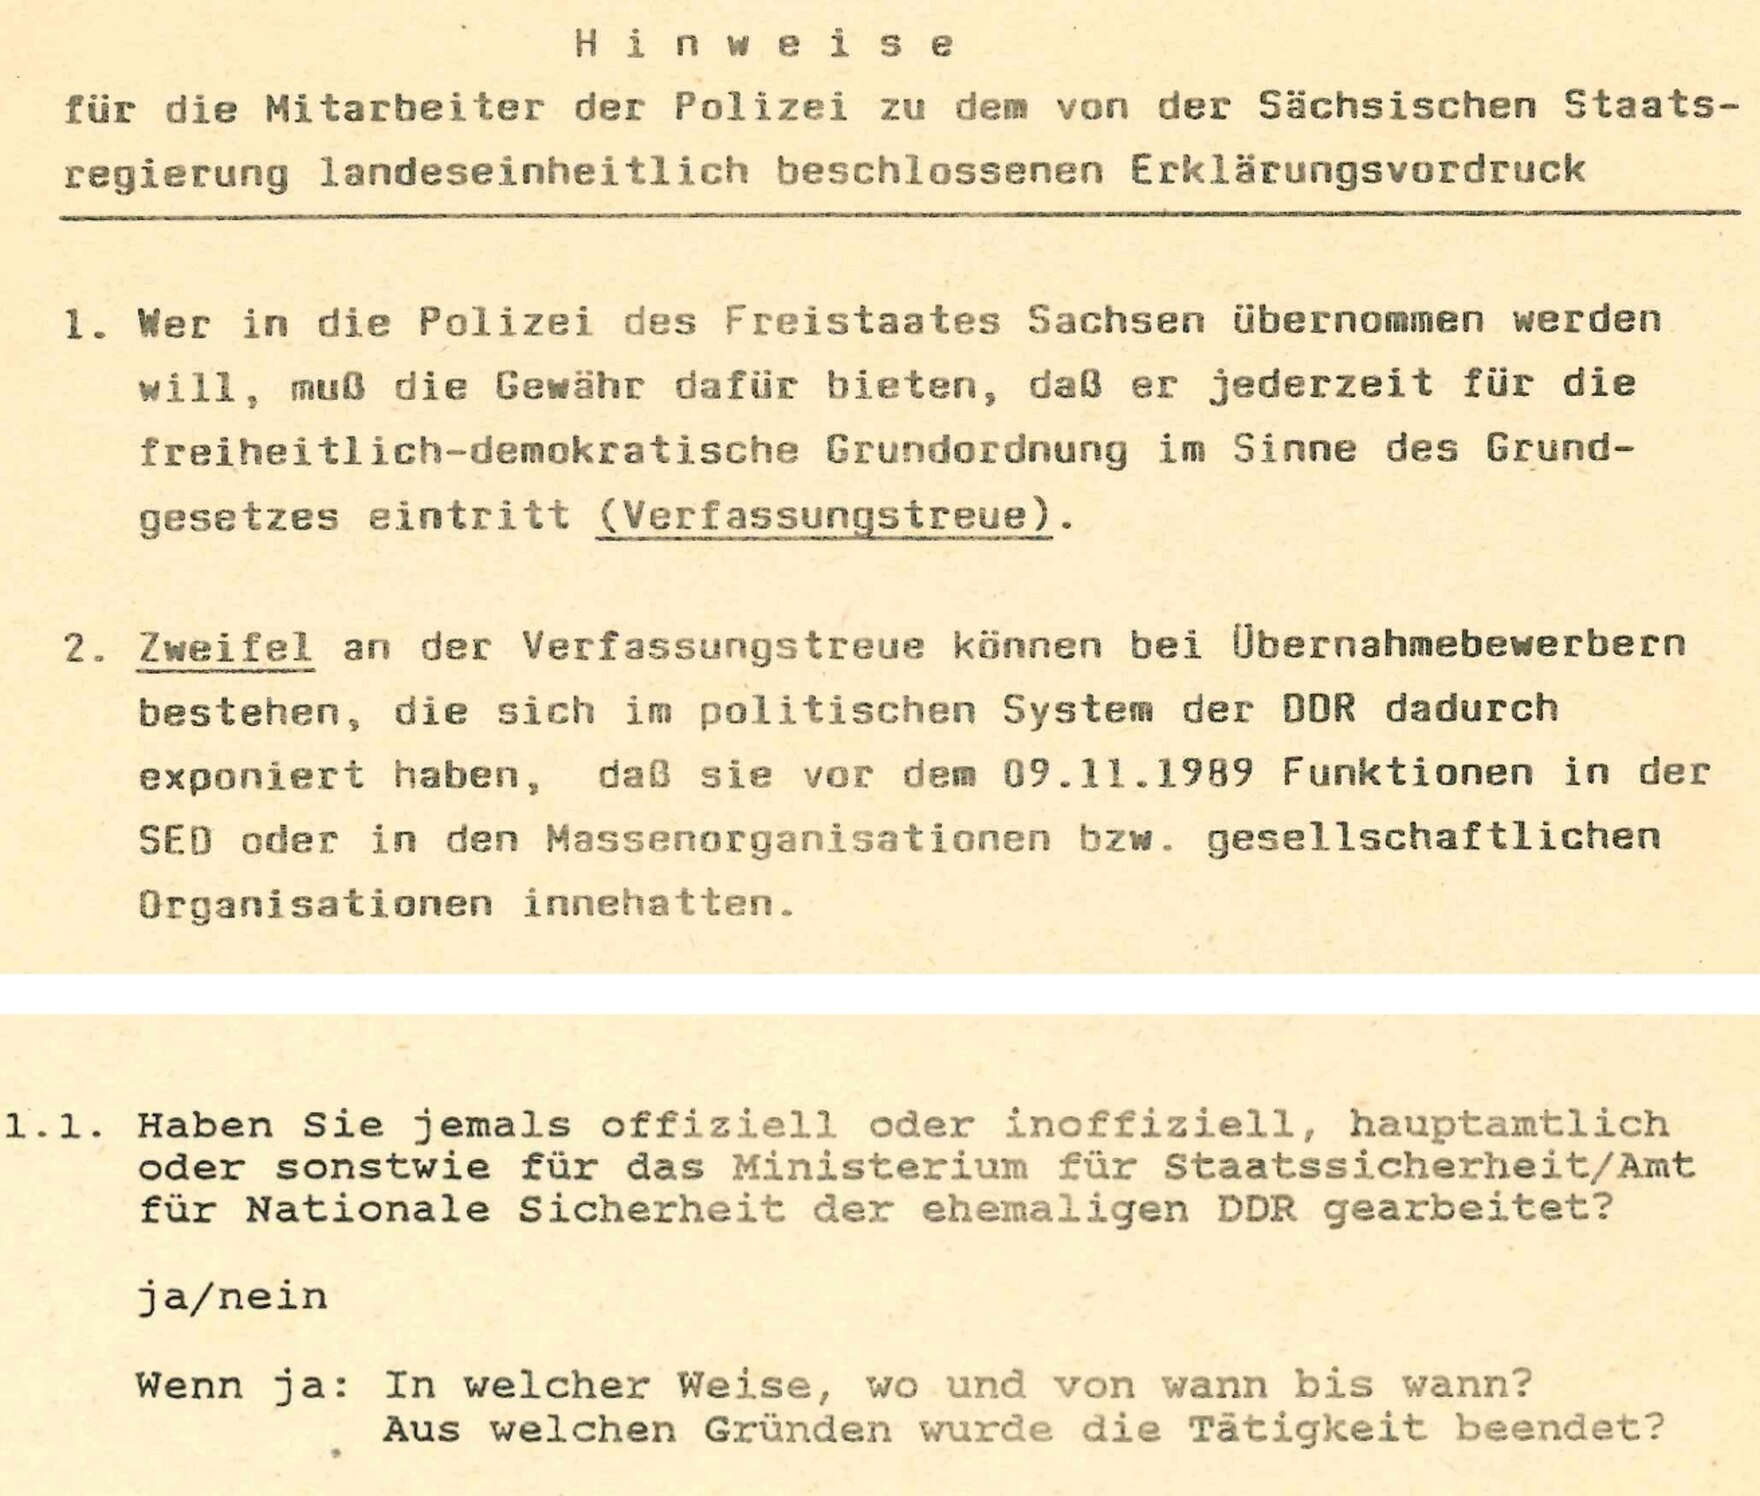 Das Dokument weist darauf hin, dass die übernommenen Bediensteten »jederzeit für die freiheitlich-demokratische Grundordnung« eintreten müssen und wann Zweifel an dieser Verfassungstreue bestehen. Es wird abgefragt, ob für die Stasi gearbeitet wurde.